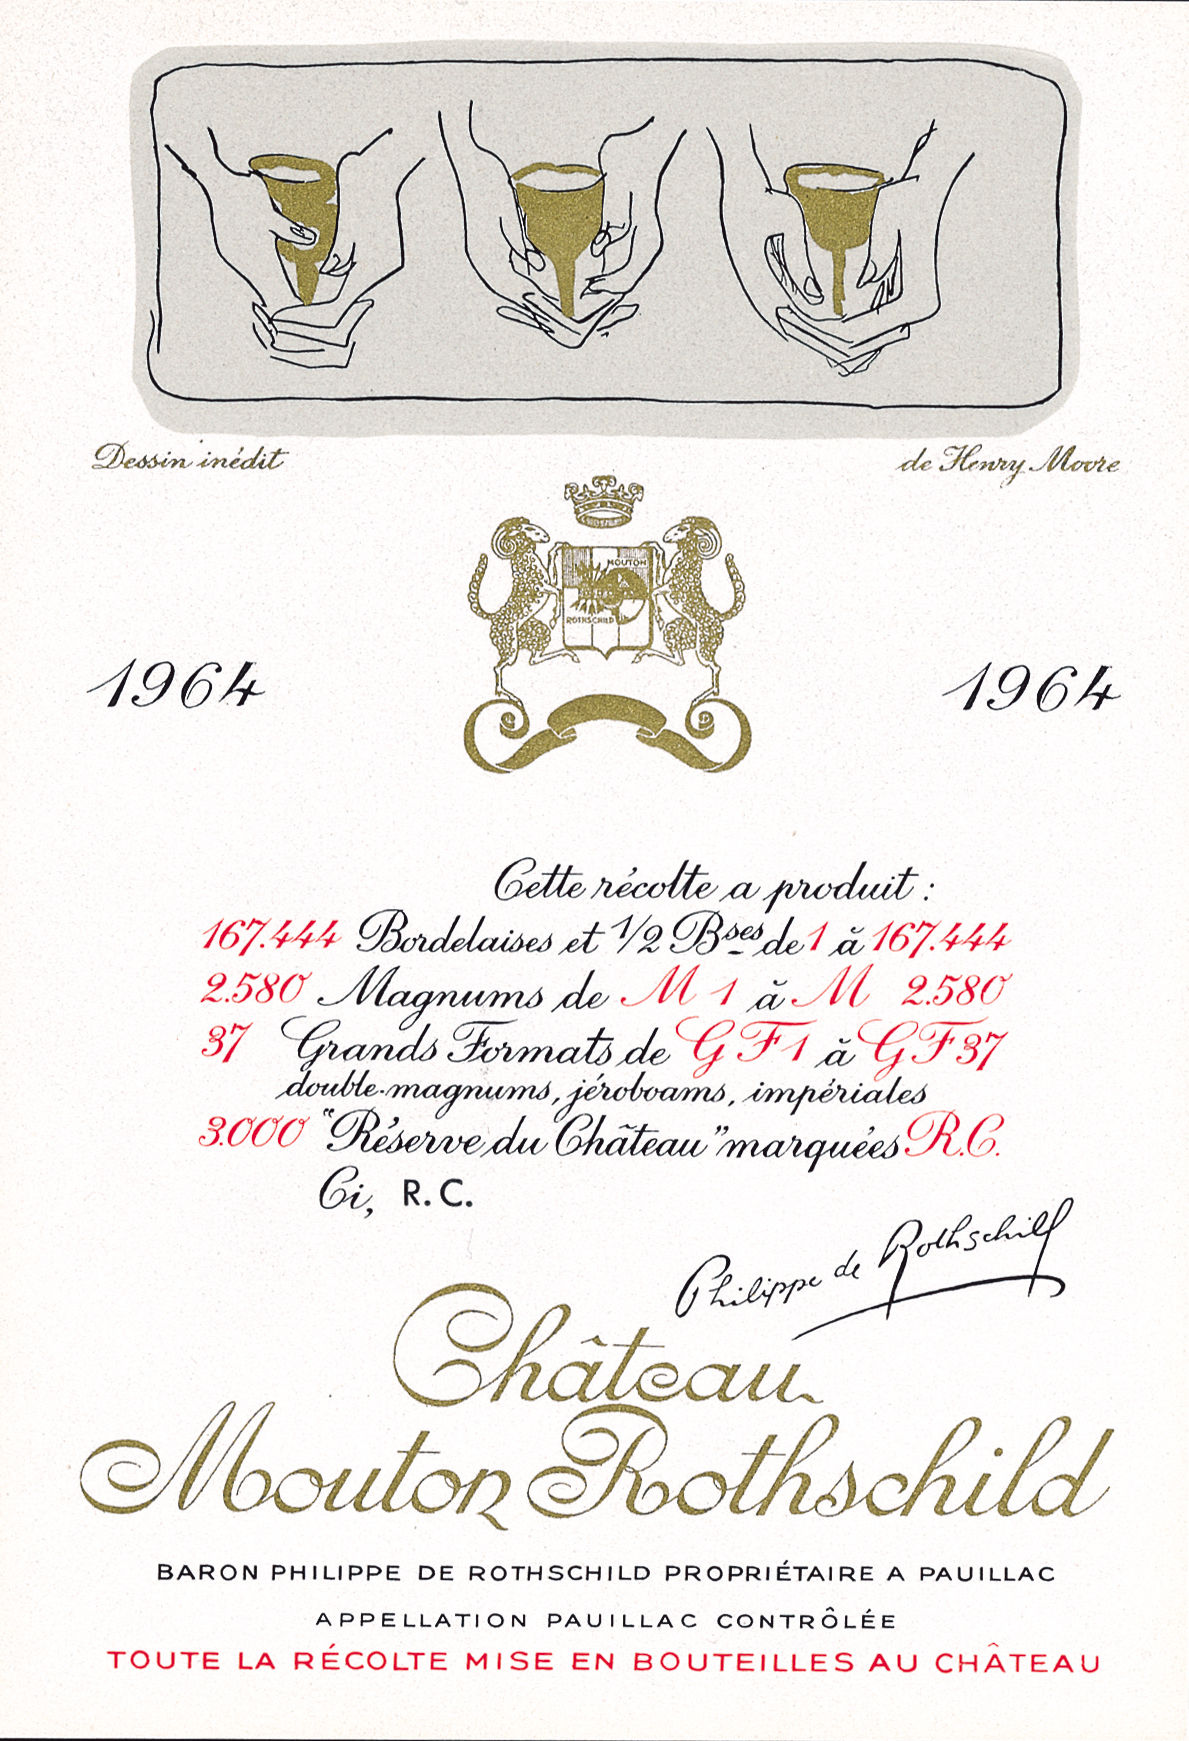 Etiquette Mouton Rothschild 1964